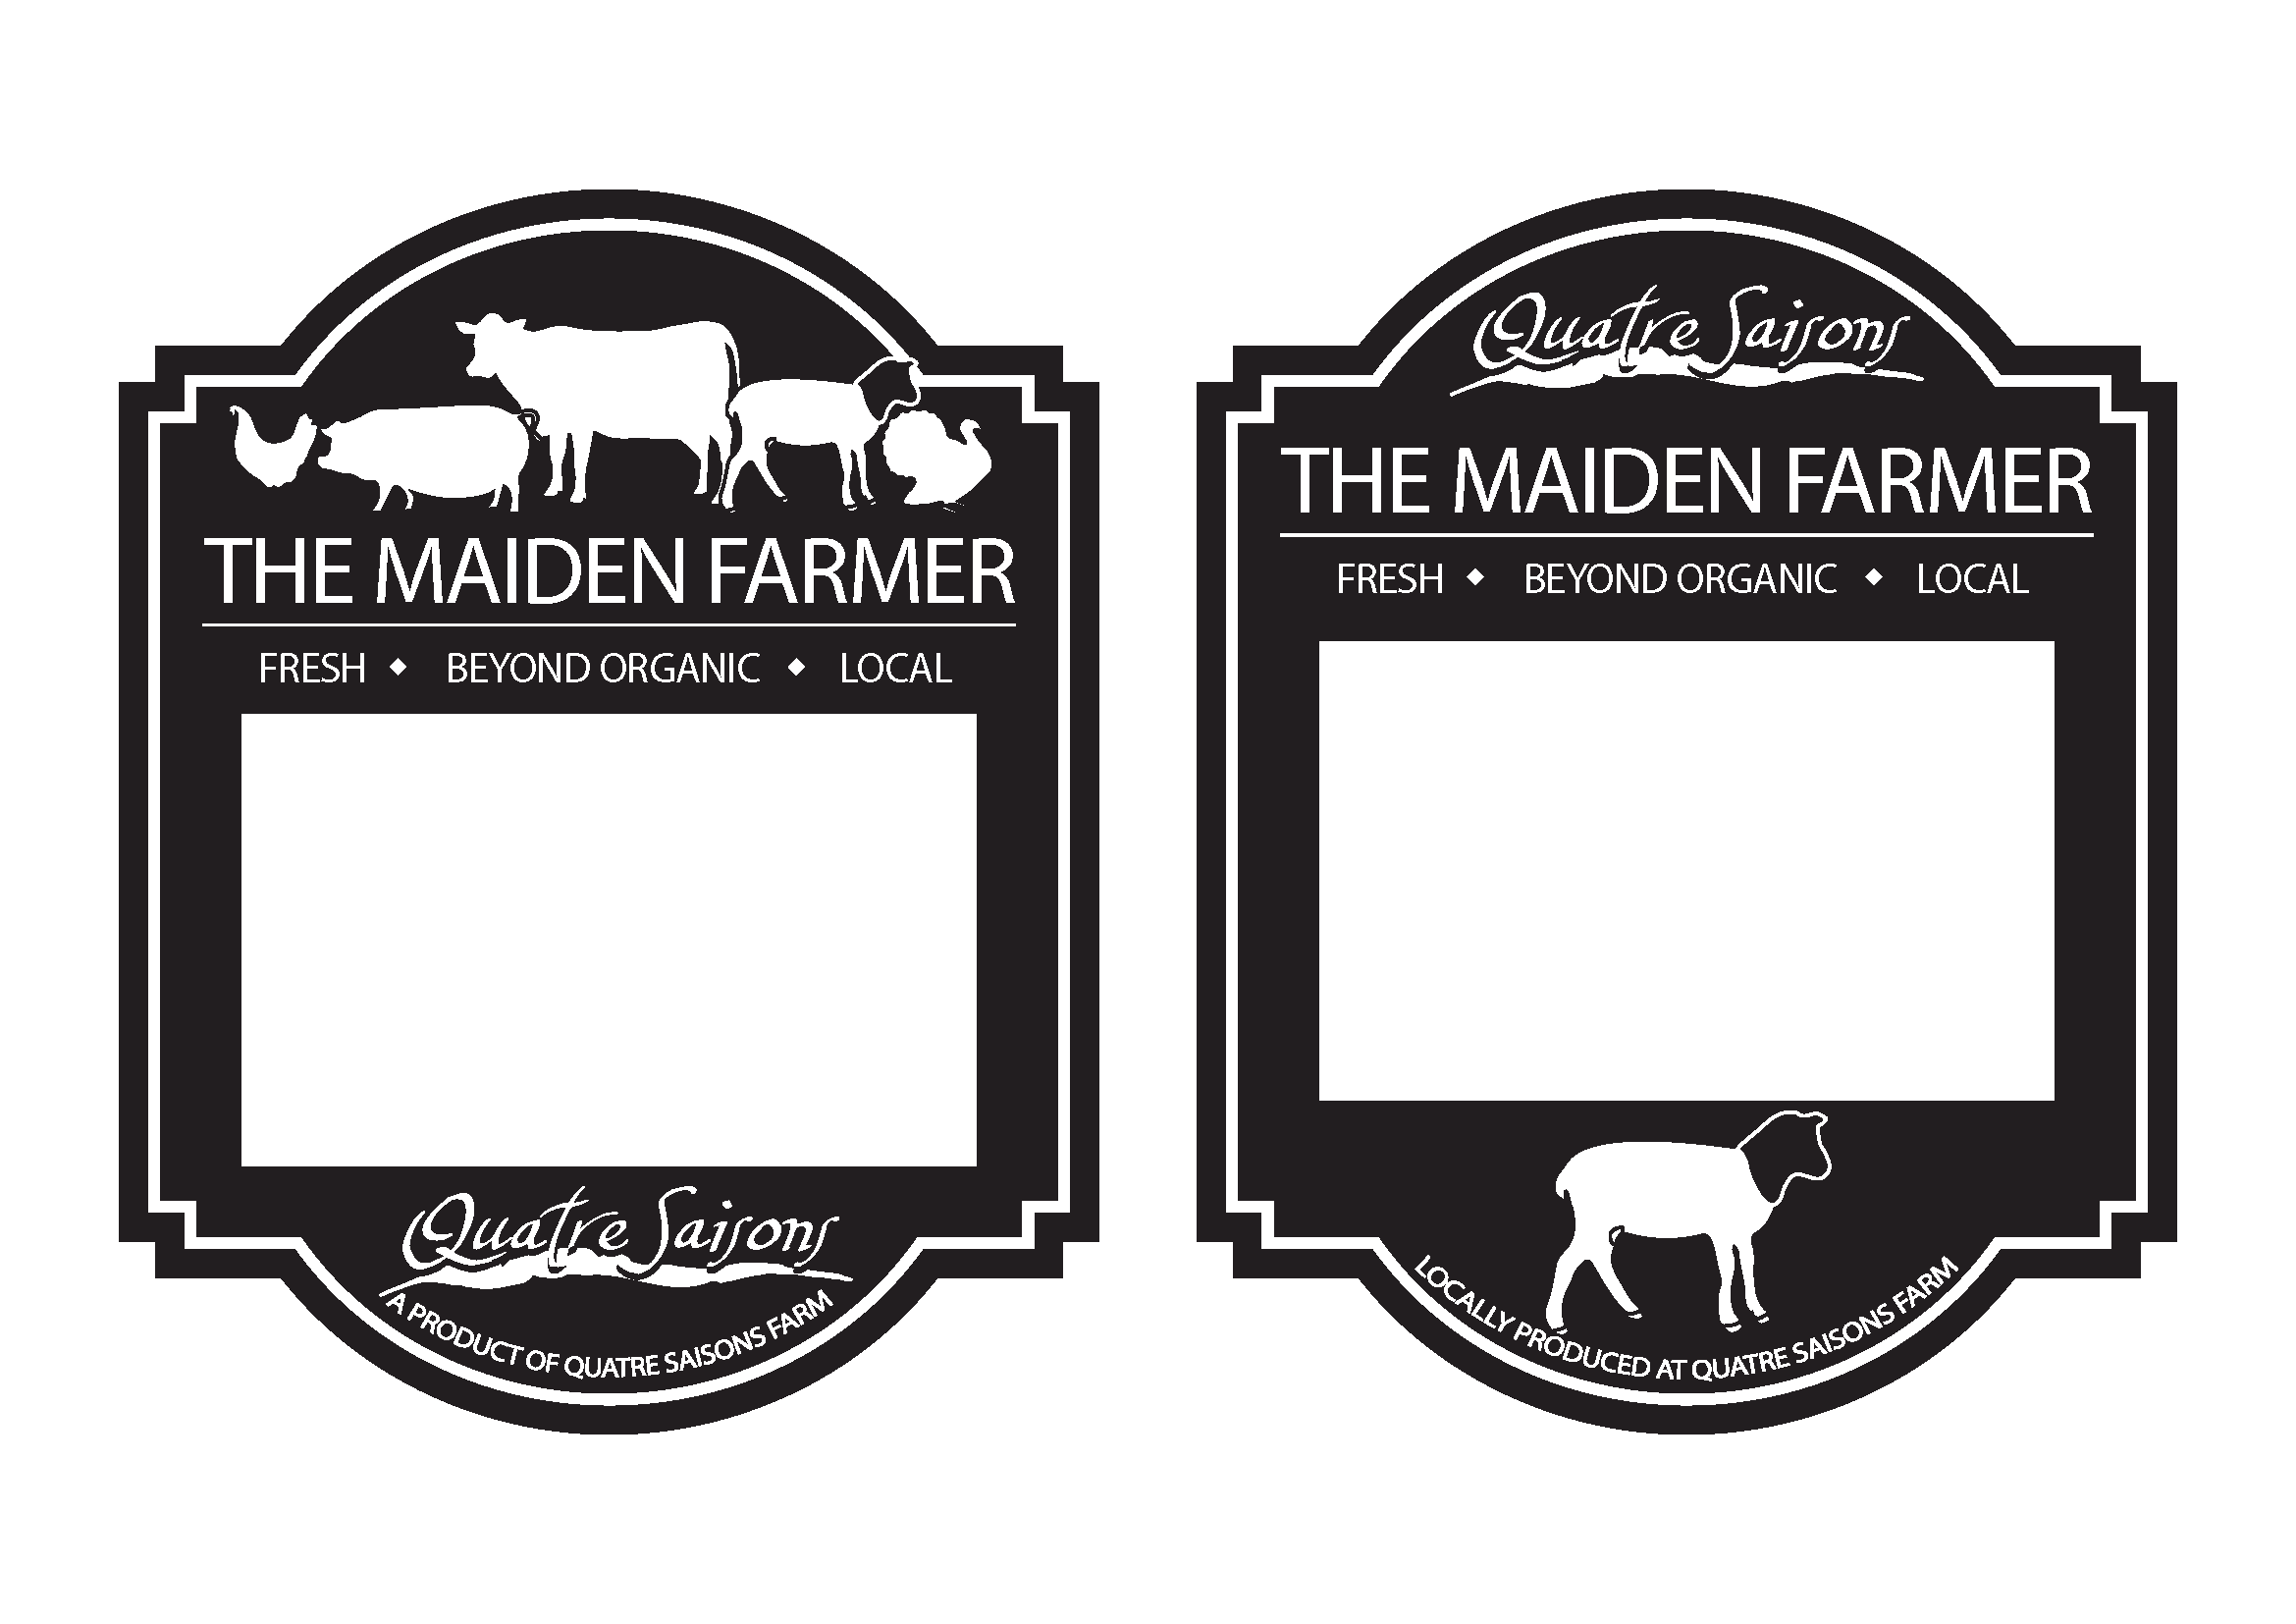 Maiden Farmer